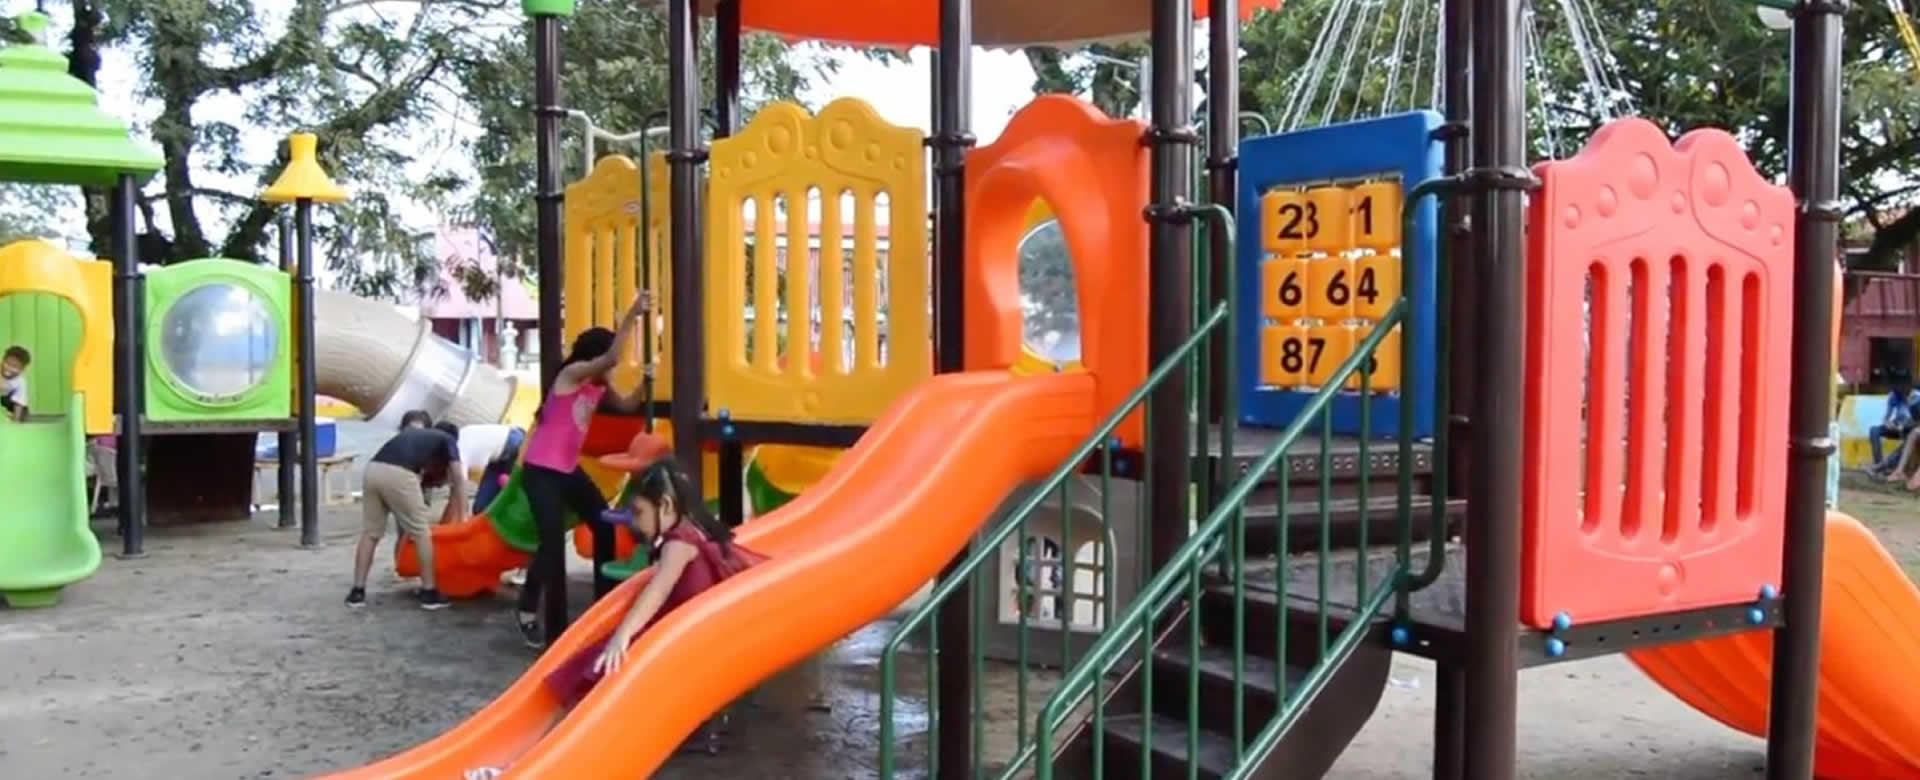 Instalan juegos infantiles en parques y plaza municipal de Bluefields